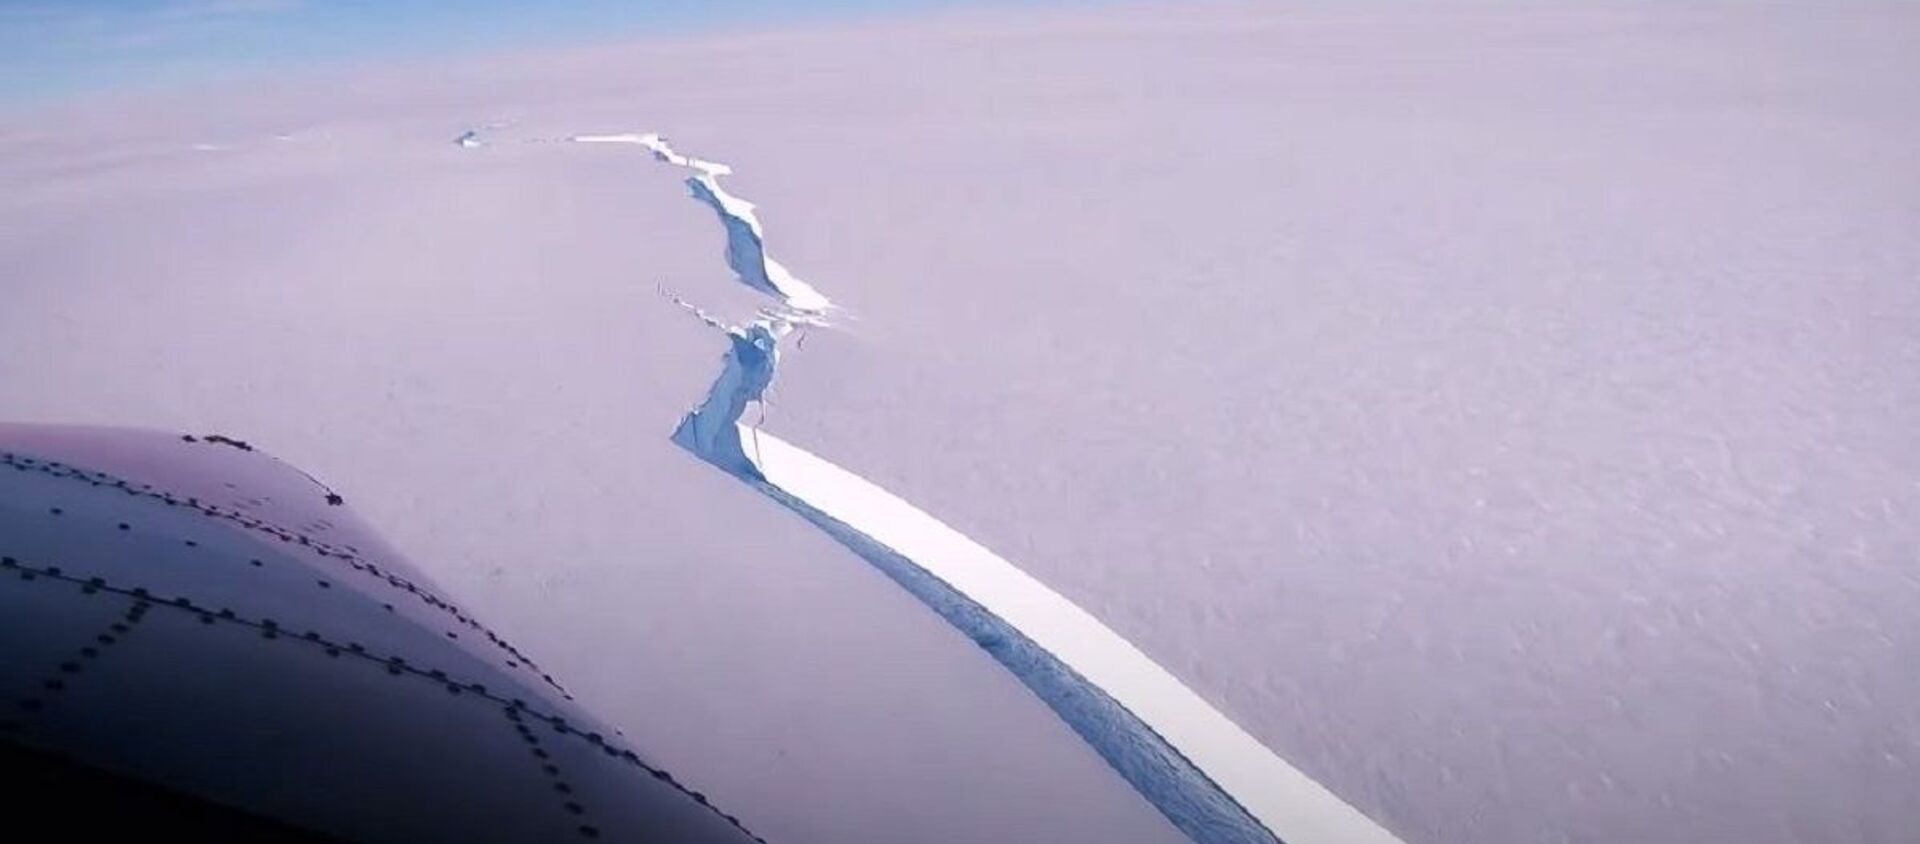 Айсберг размером почти с Санкт-Петербург откололся от ледника в Антарктике - Sputnik Абхазия, 1920, 28.02.2021